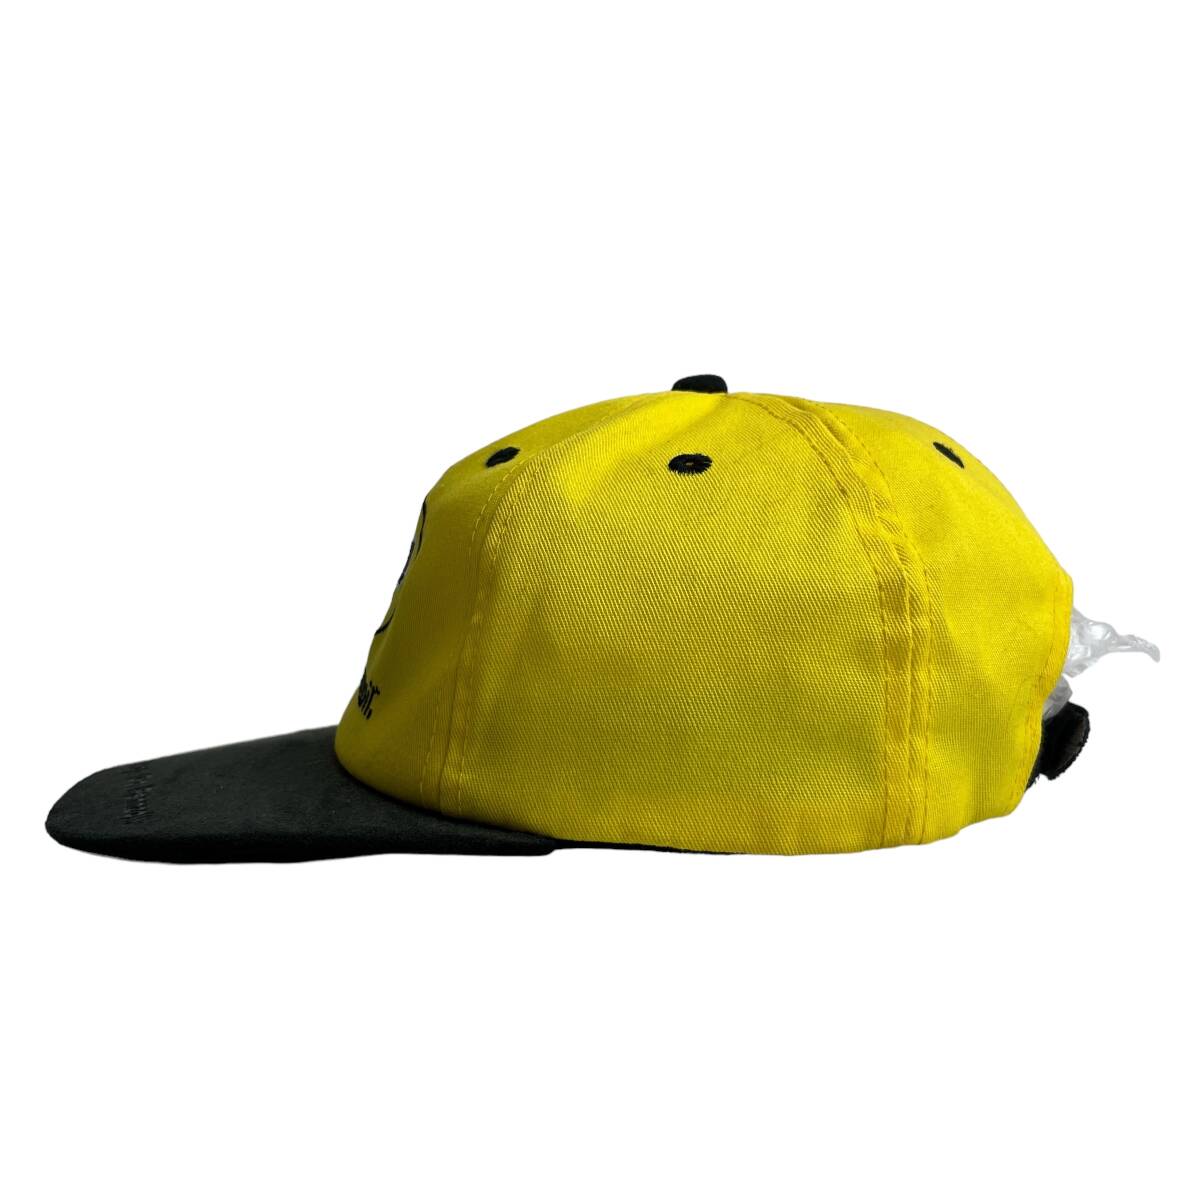 【キャップ/帽子】PENNZOIL (ペンゾイル) トラッカーキャップ ツートンカラー 刺繍ロゴ イエロー ブラック 黄色 黒